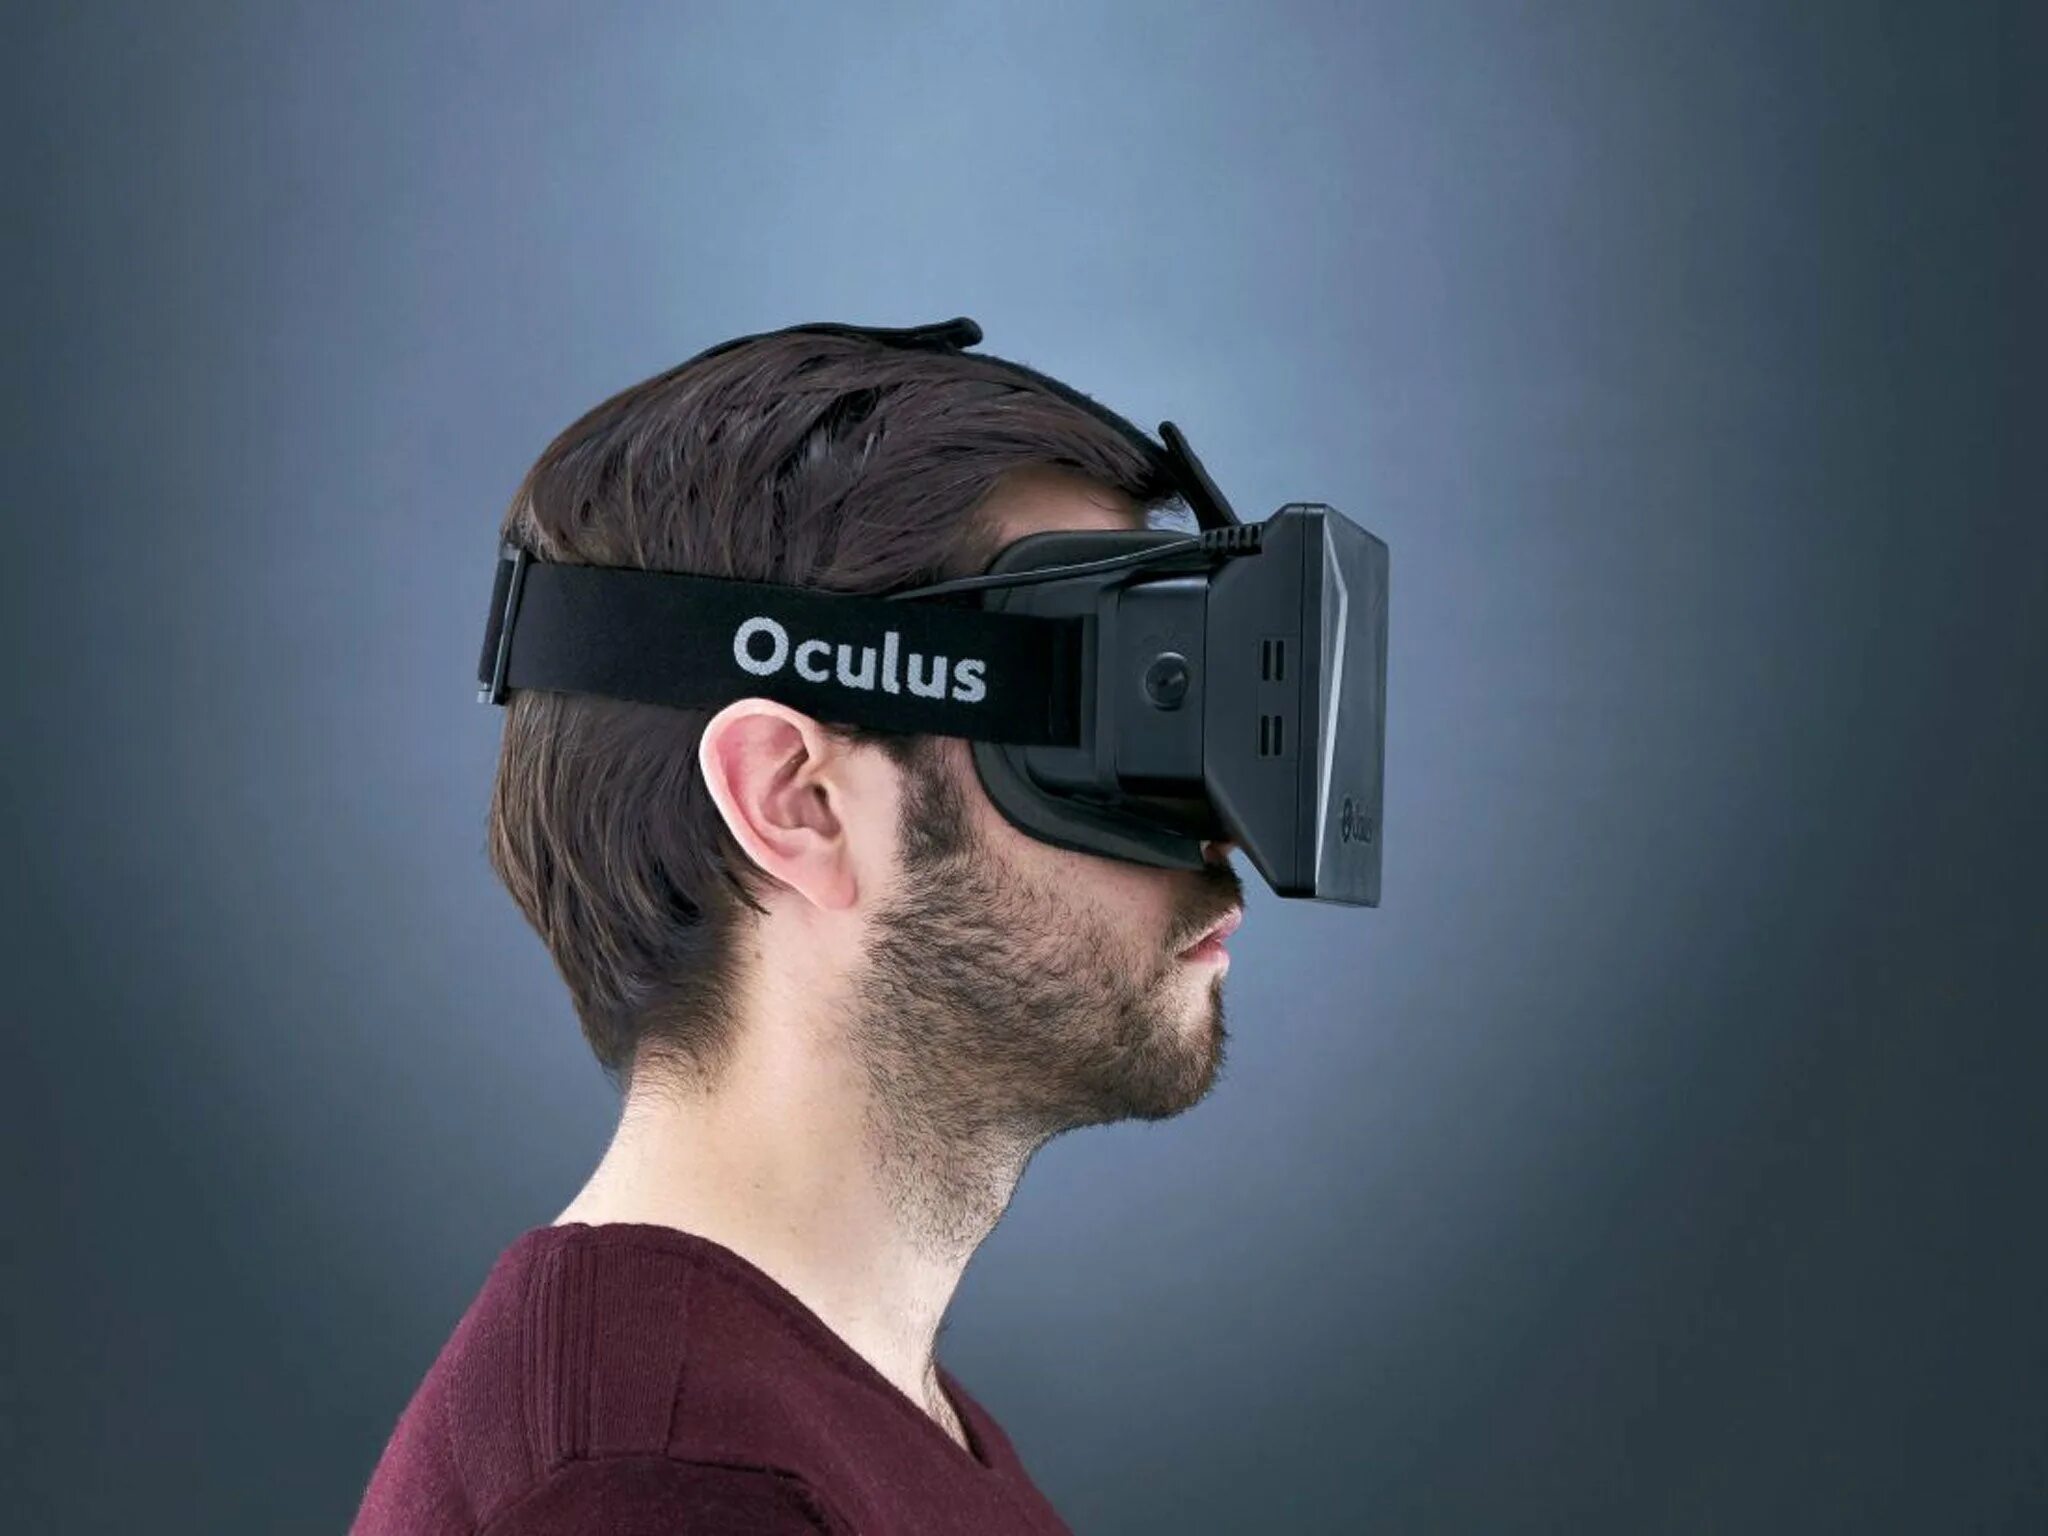 Get vr. Шлем Oculus Rift. ВР очки Окулус. VR шлем Oculus. Очки виртуальной реальности Oculus Rift.